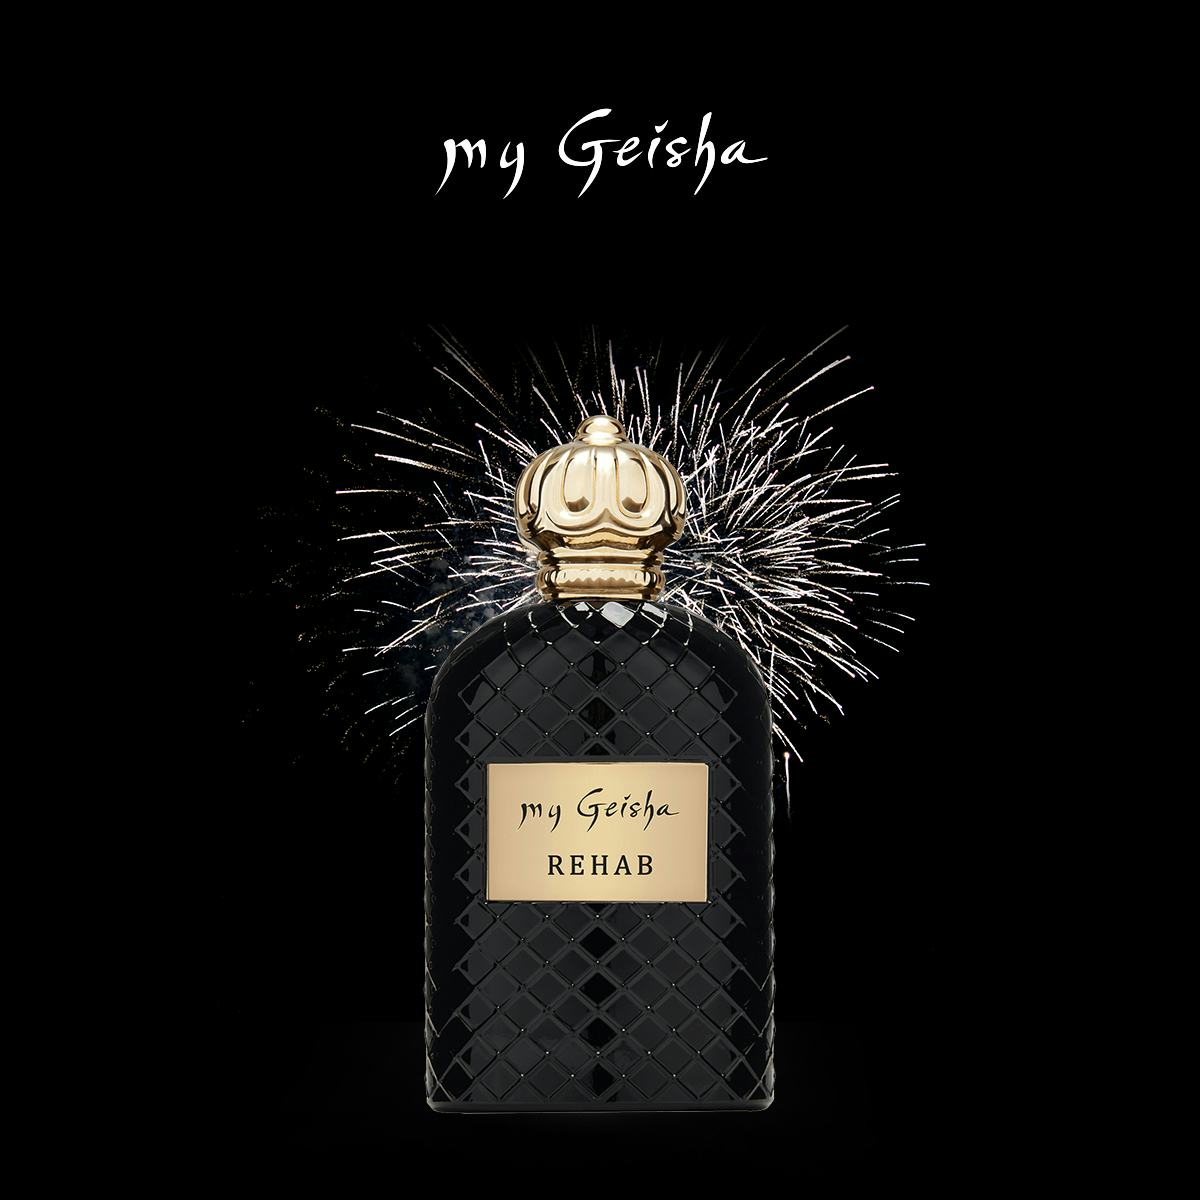 Extrait de parfum "Rehab" 100 ml, My Geisha Genève, Genève, image 1 | Mimelis